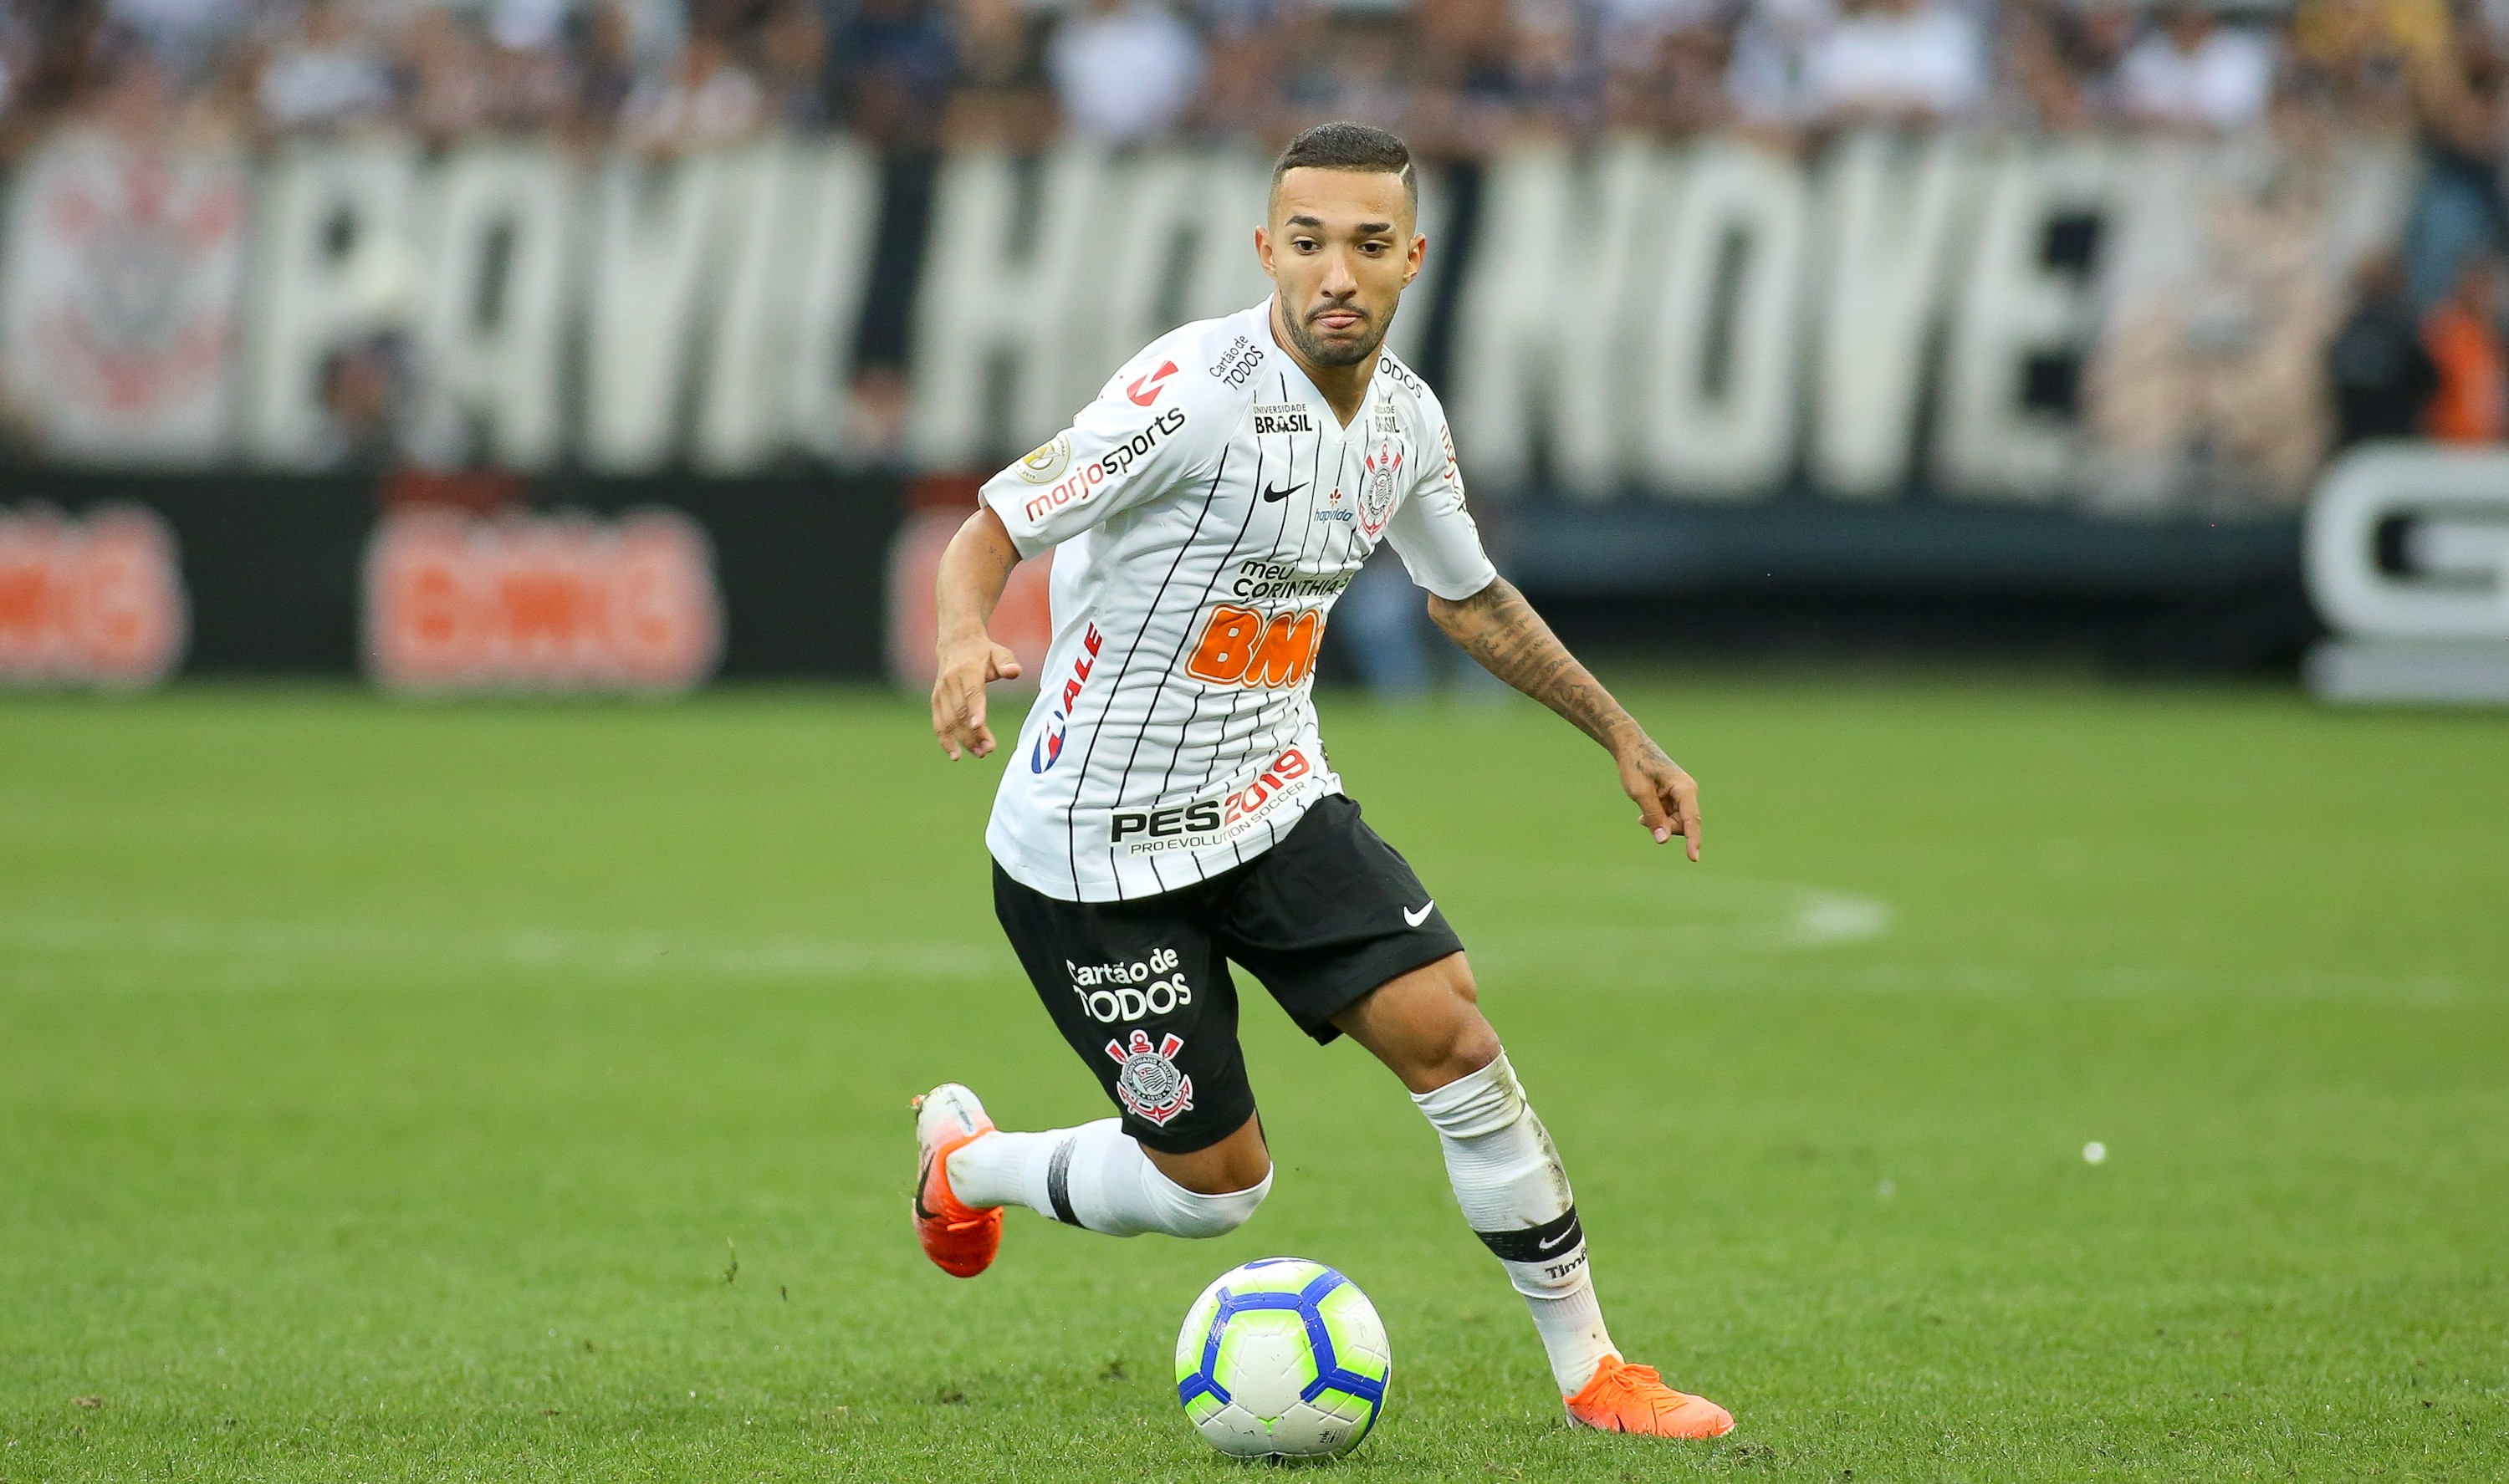 O Corinthians acertou a venda do atacante Clayson ao Bahia, por valores ainda não divulgados. A negociação foi noticiada inicialmente pelo site “Meu Timão” e o LANCE! confirmou que as partes já chegaram a um acordo.